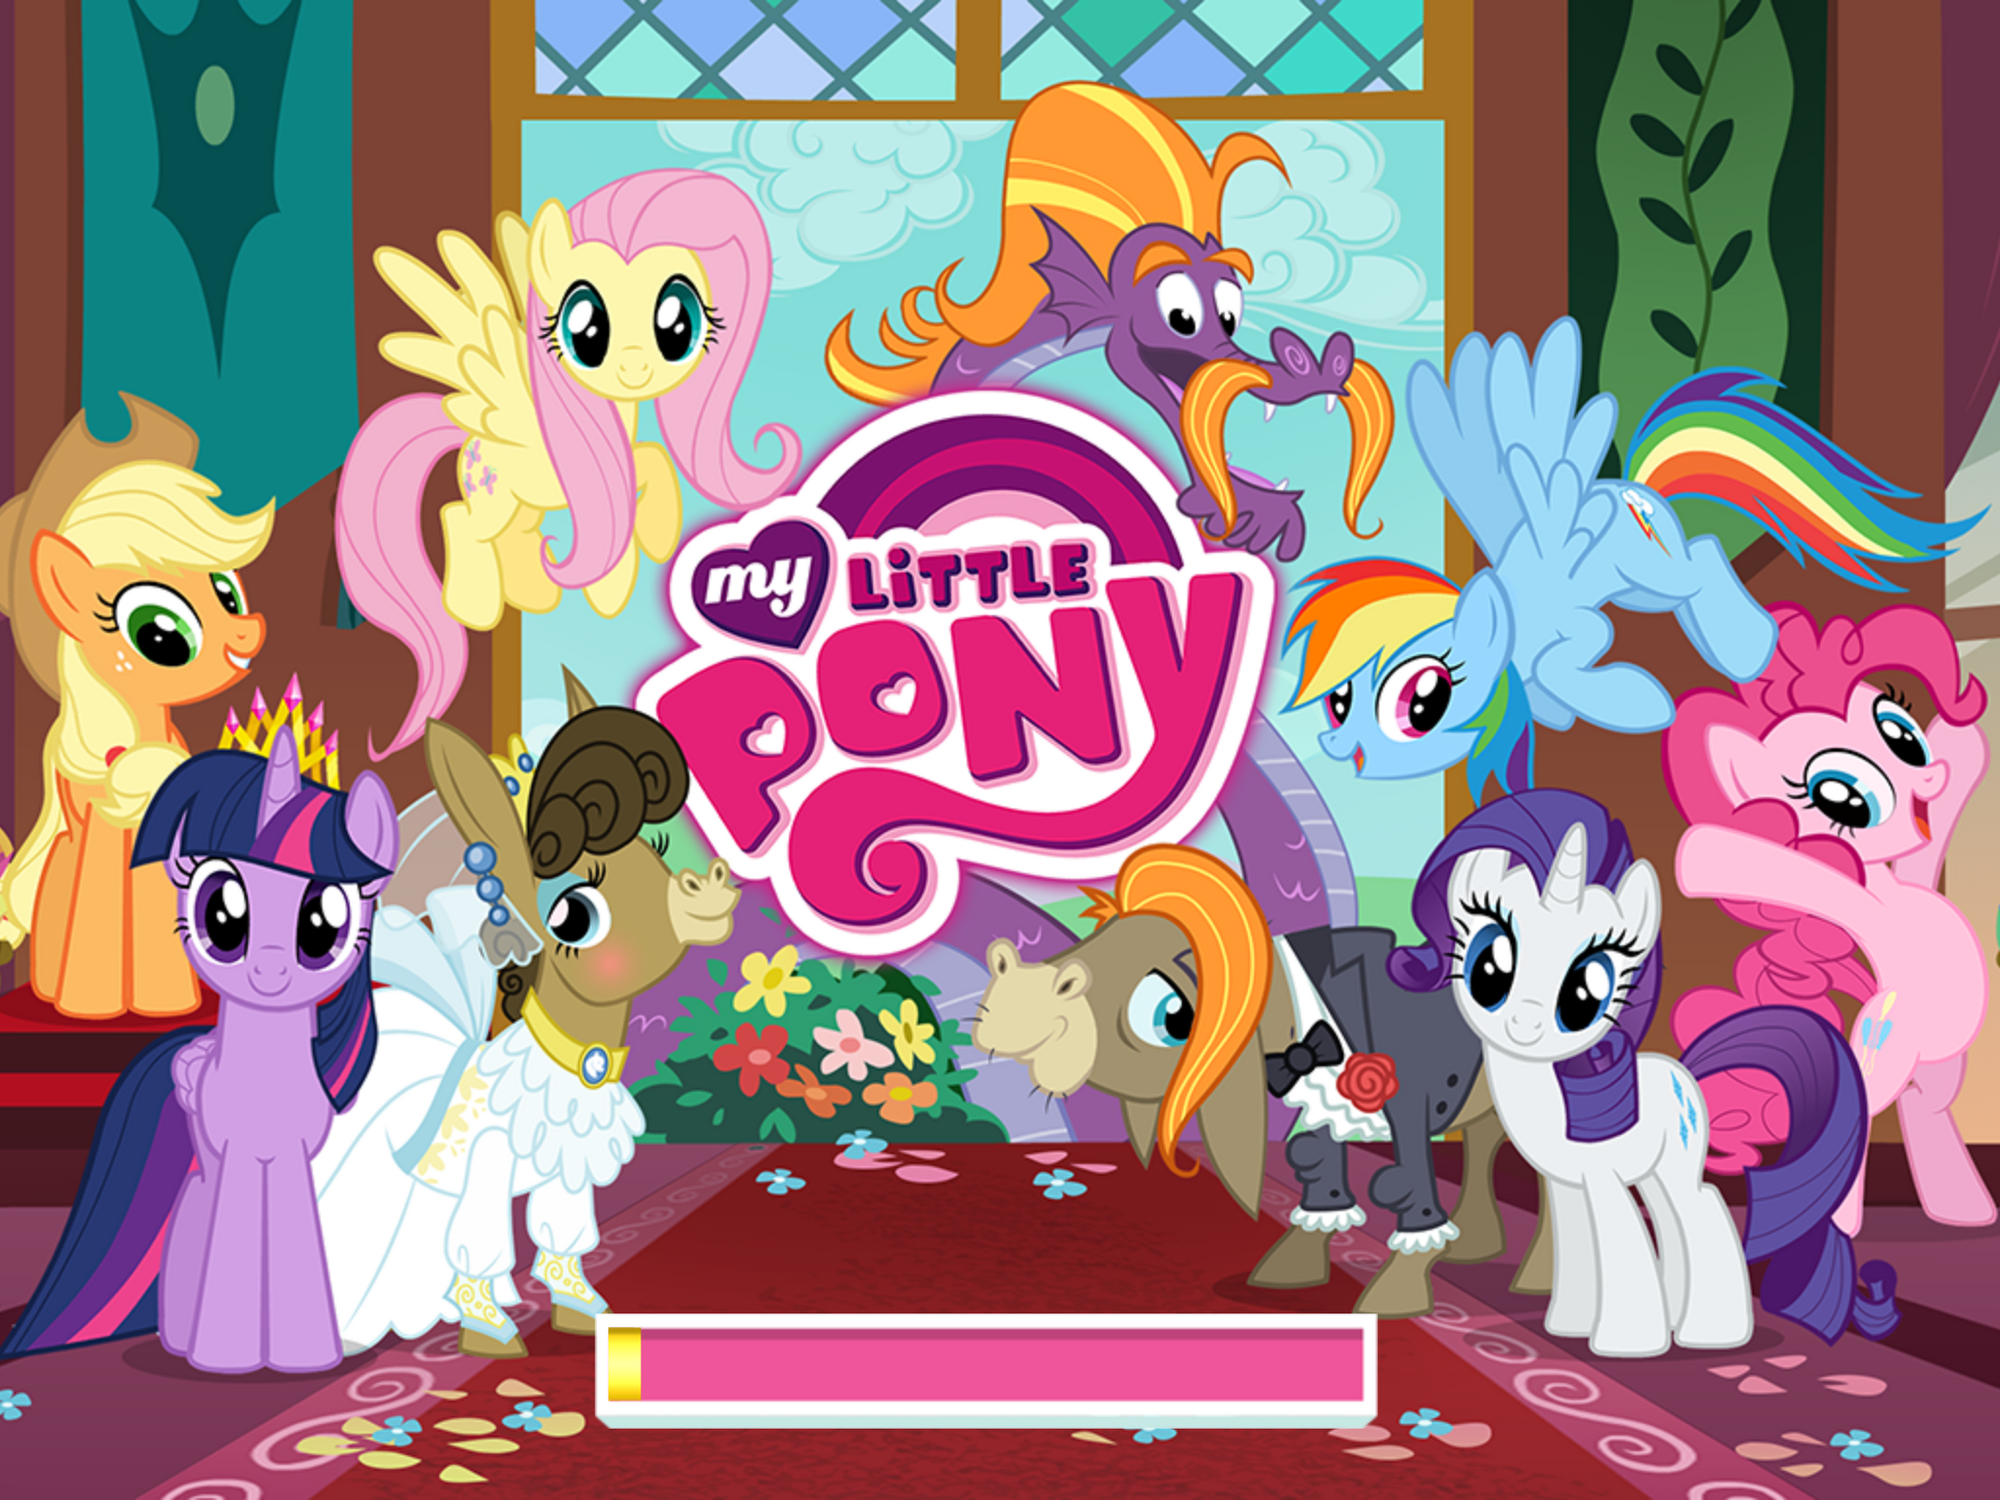 Игра литл пони гонки. My little Pony игра. Игра MLP Gameloft. My little Pony Friendship is Magic игра. Игра my little Pony от Gameloft.